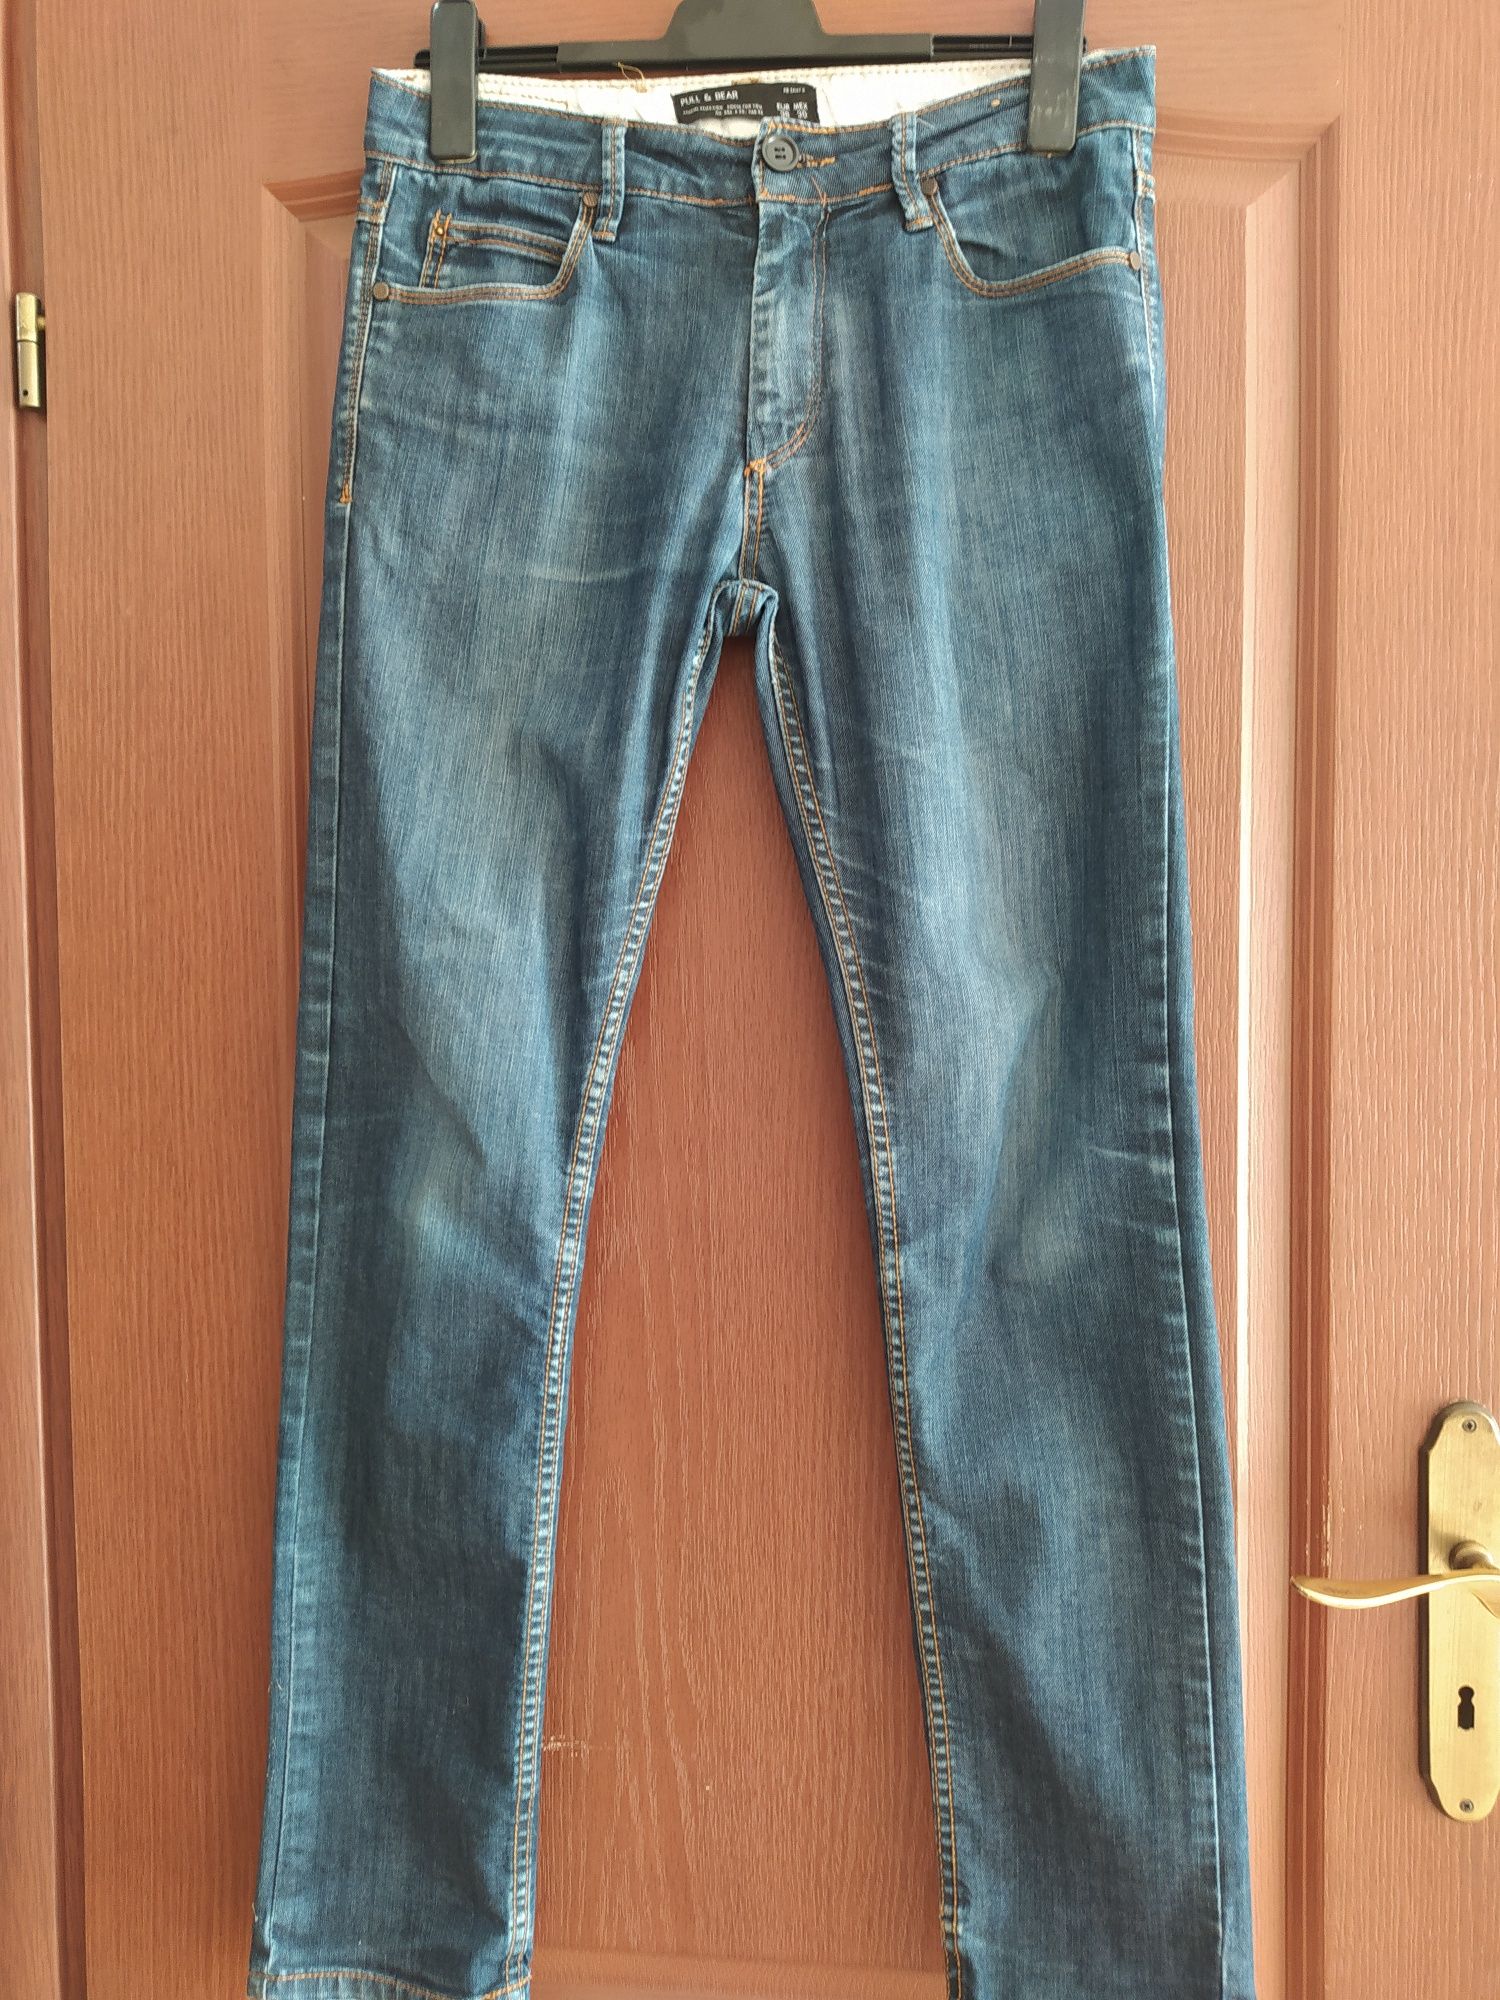 Spodnie jeans Pull & Bear roz EUR 38 MEX 30